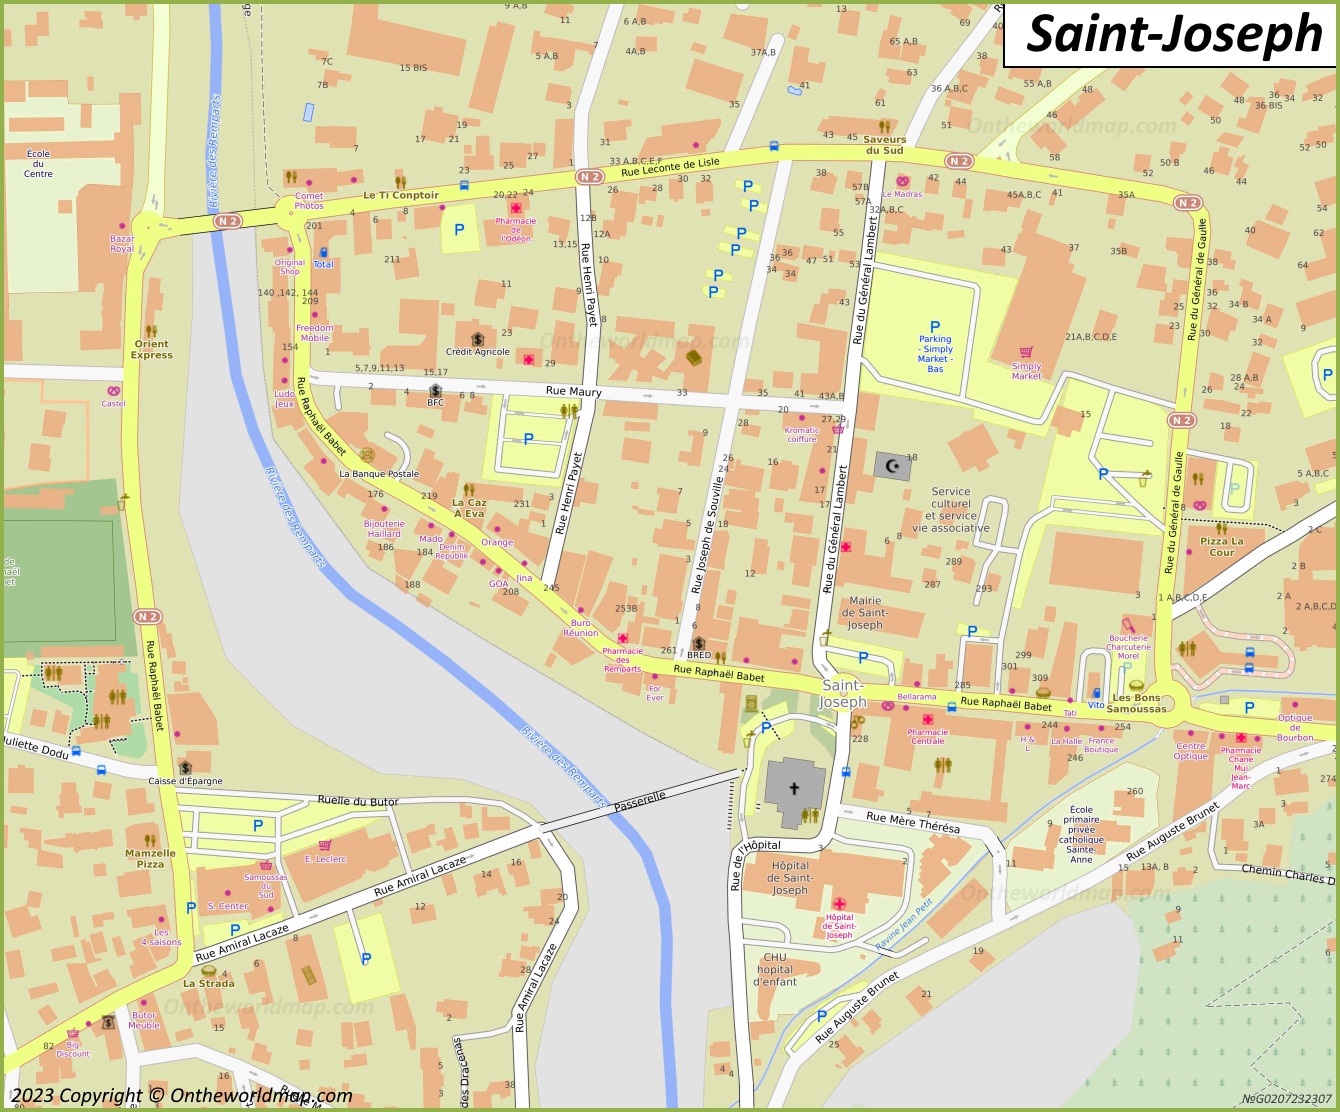 Saint-Joseph City Centre Map